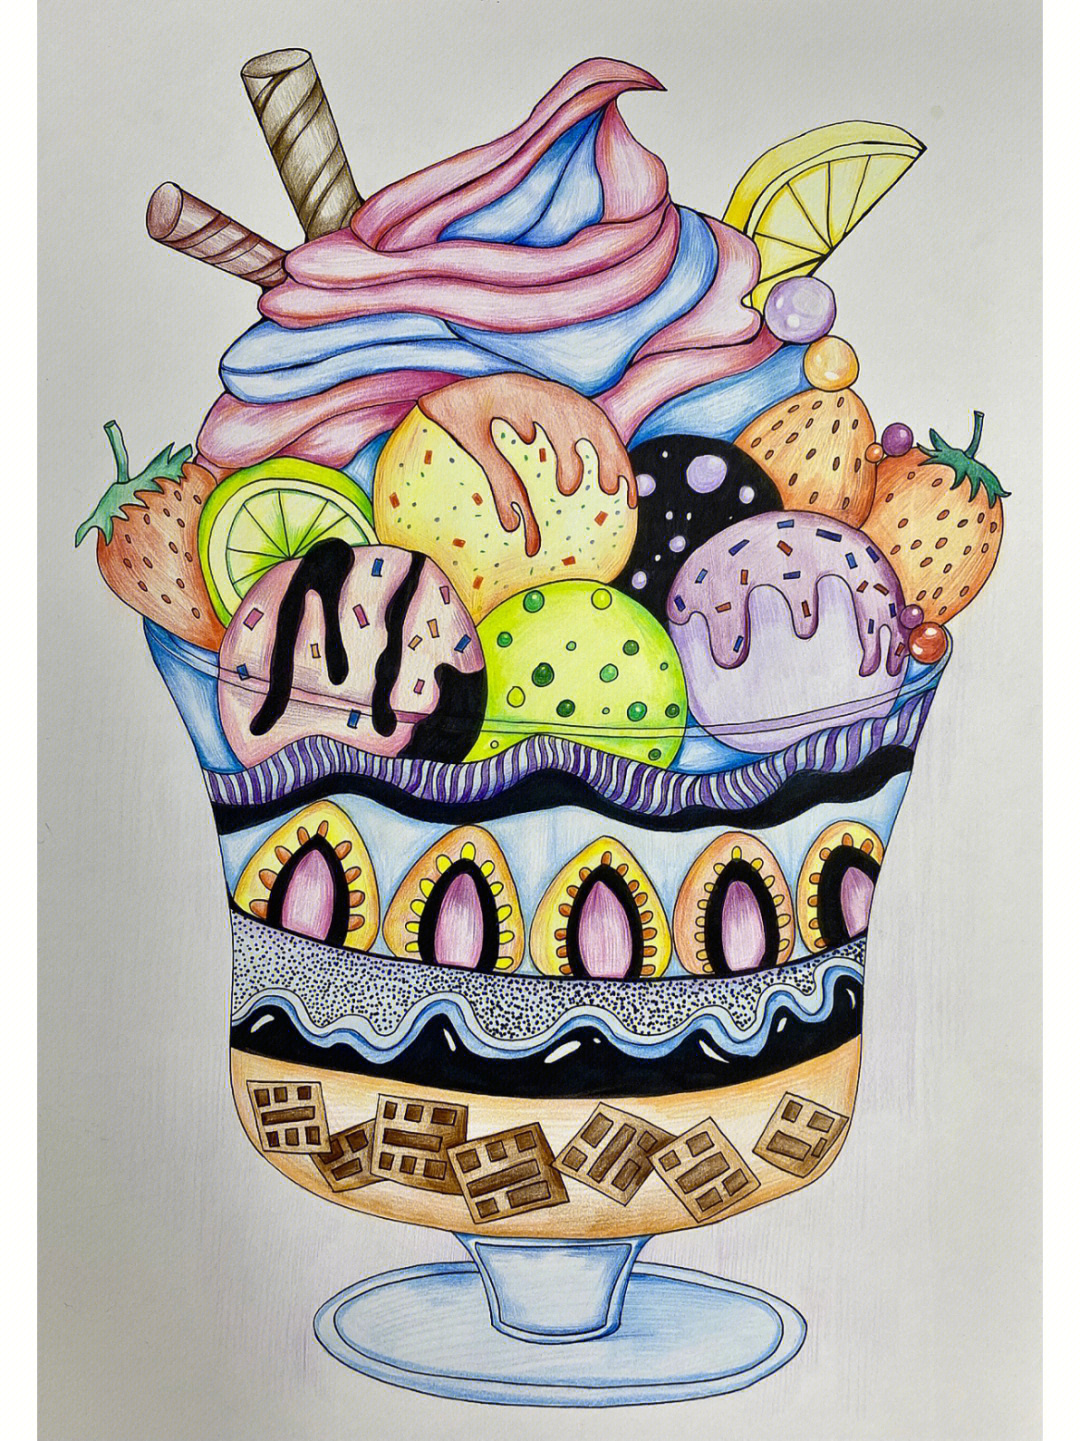 冰淇淋创意画教案图片